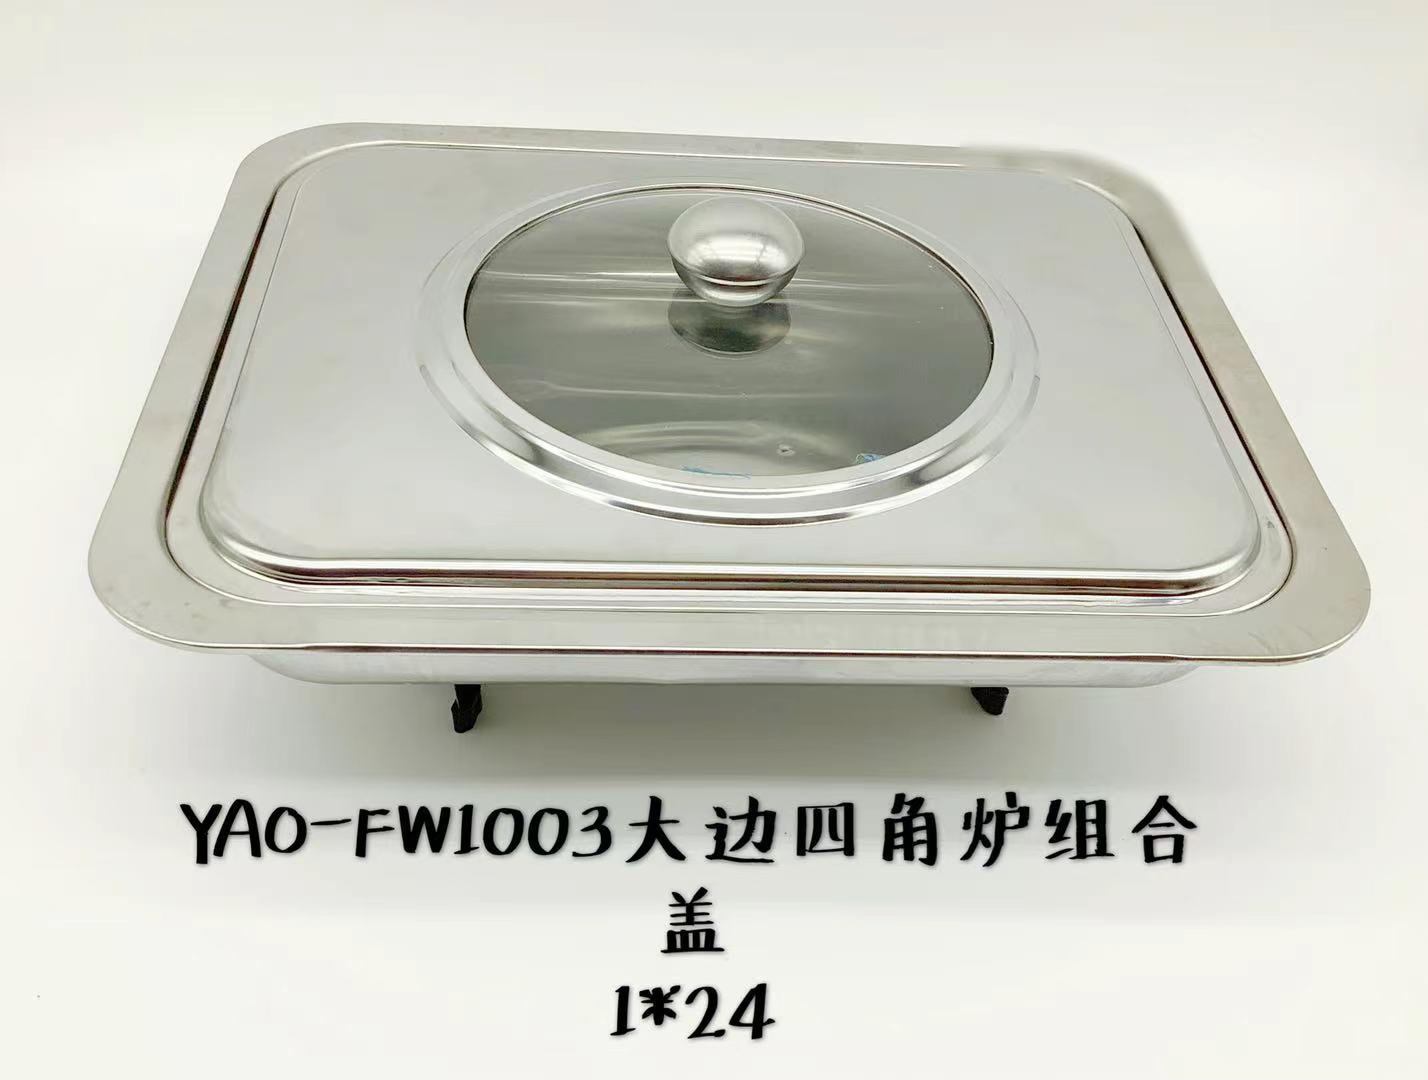 YAO-FW1003 大边四角炉(组合盖)